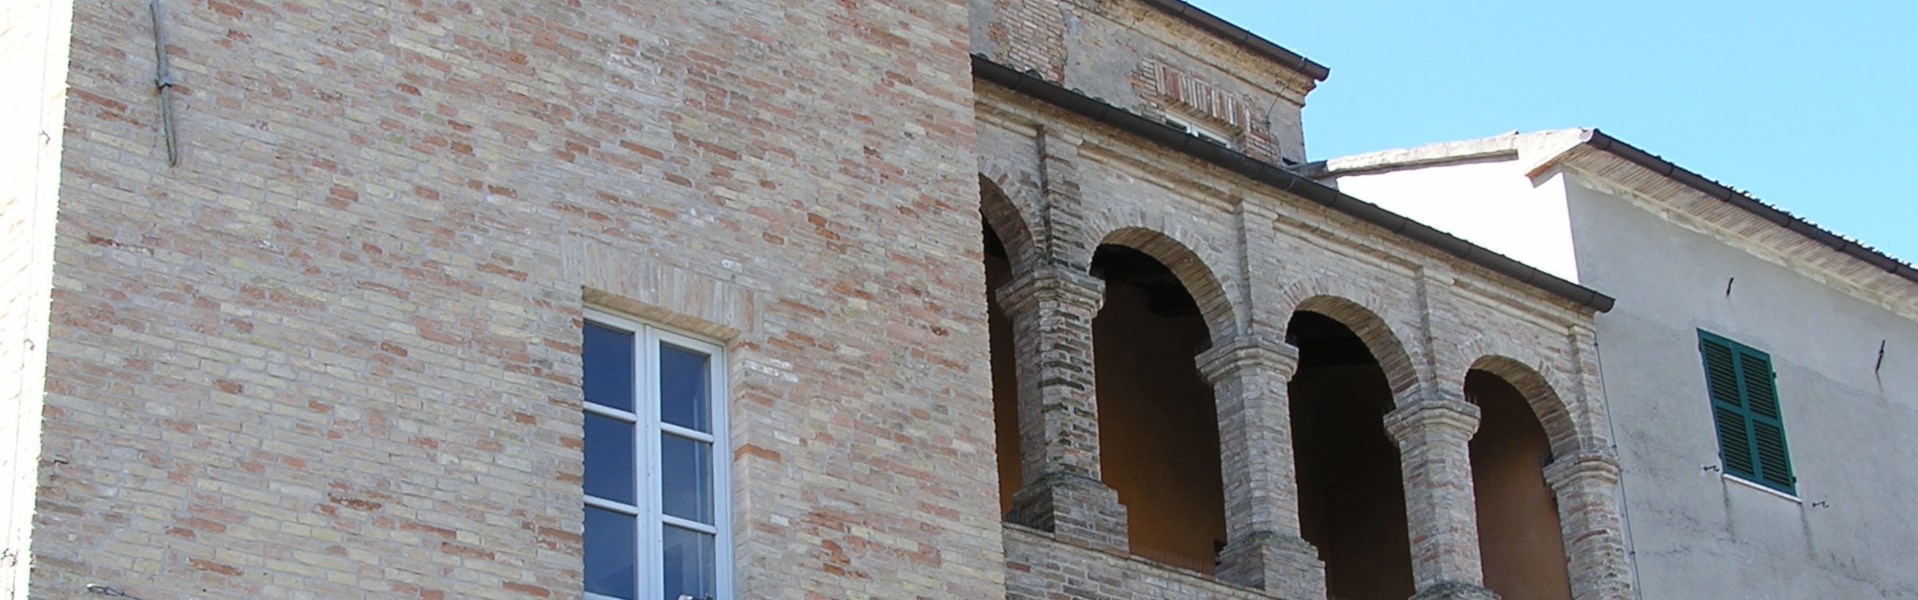 Centro storico - Palazzo Marcelli e loggia